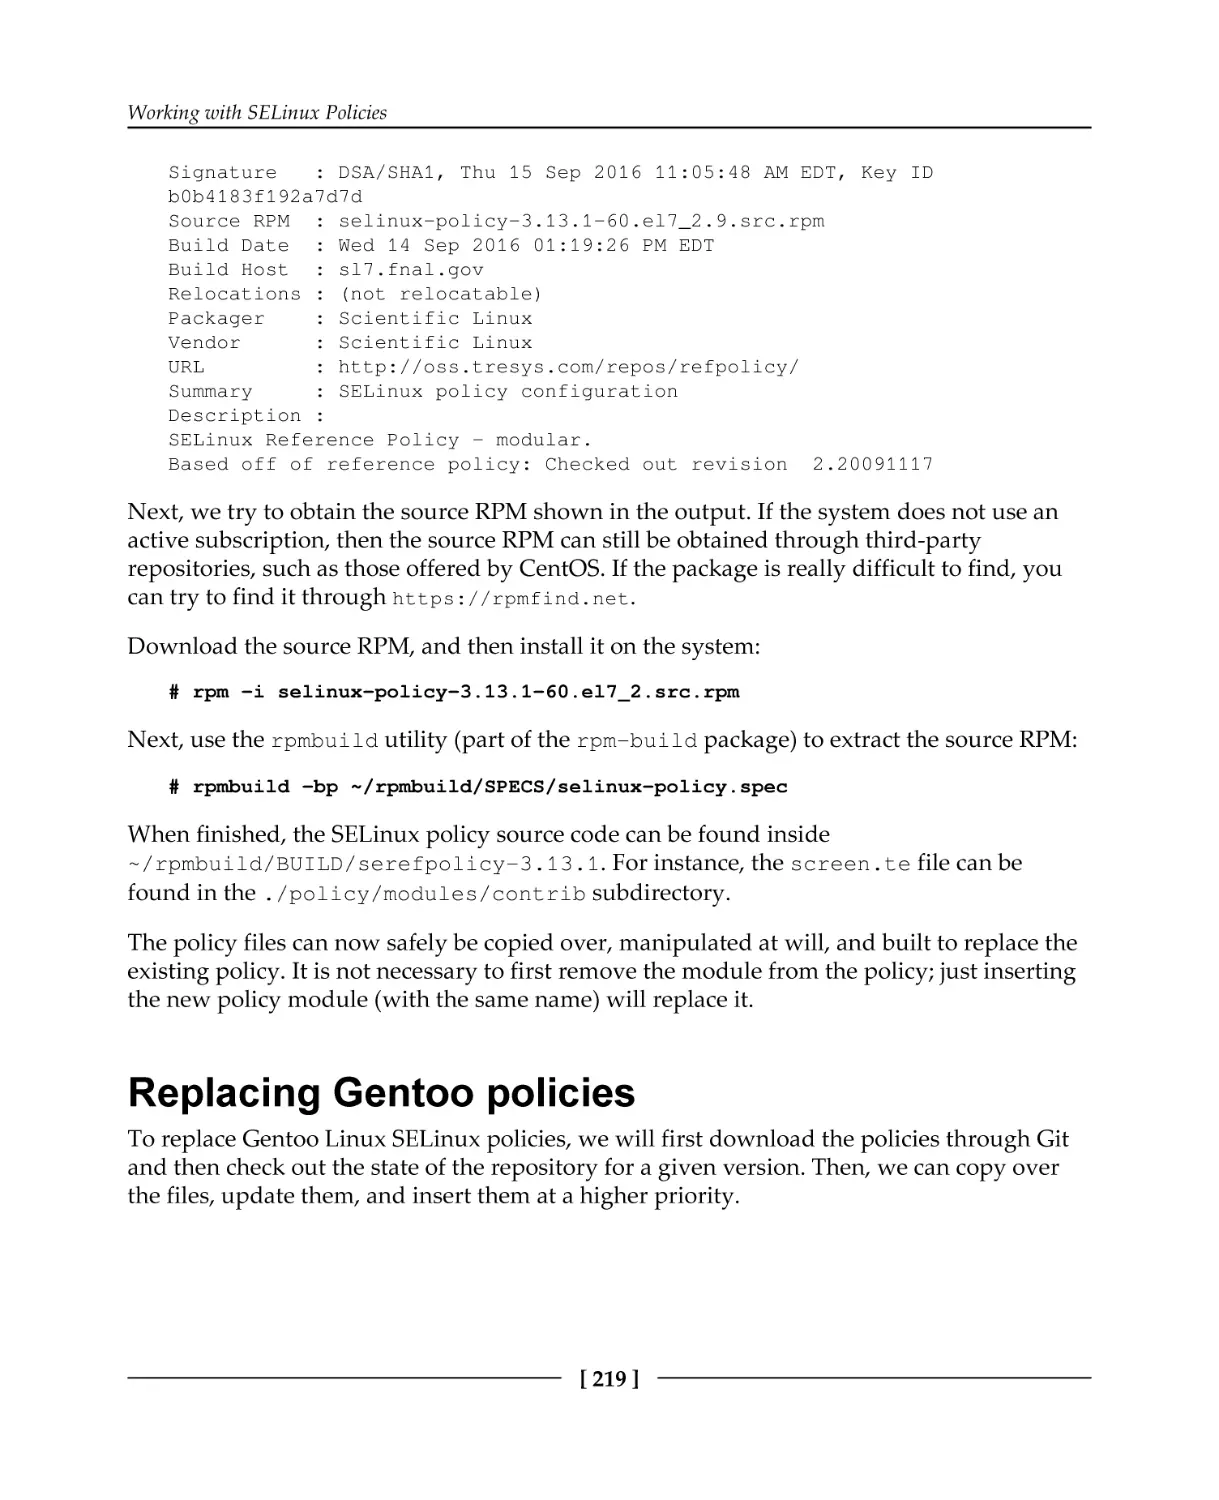 Replacing Gentoo policies